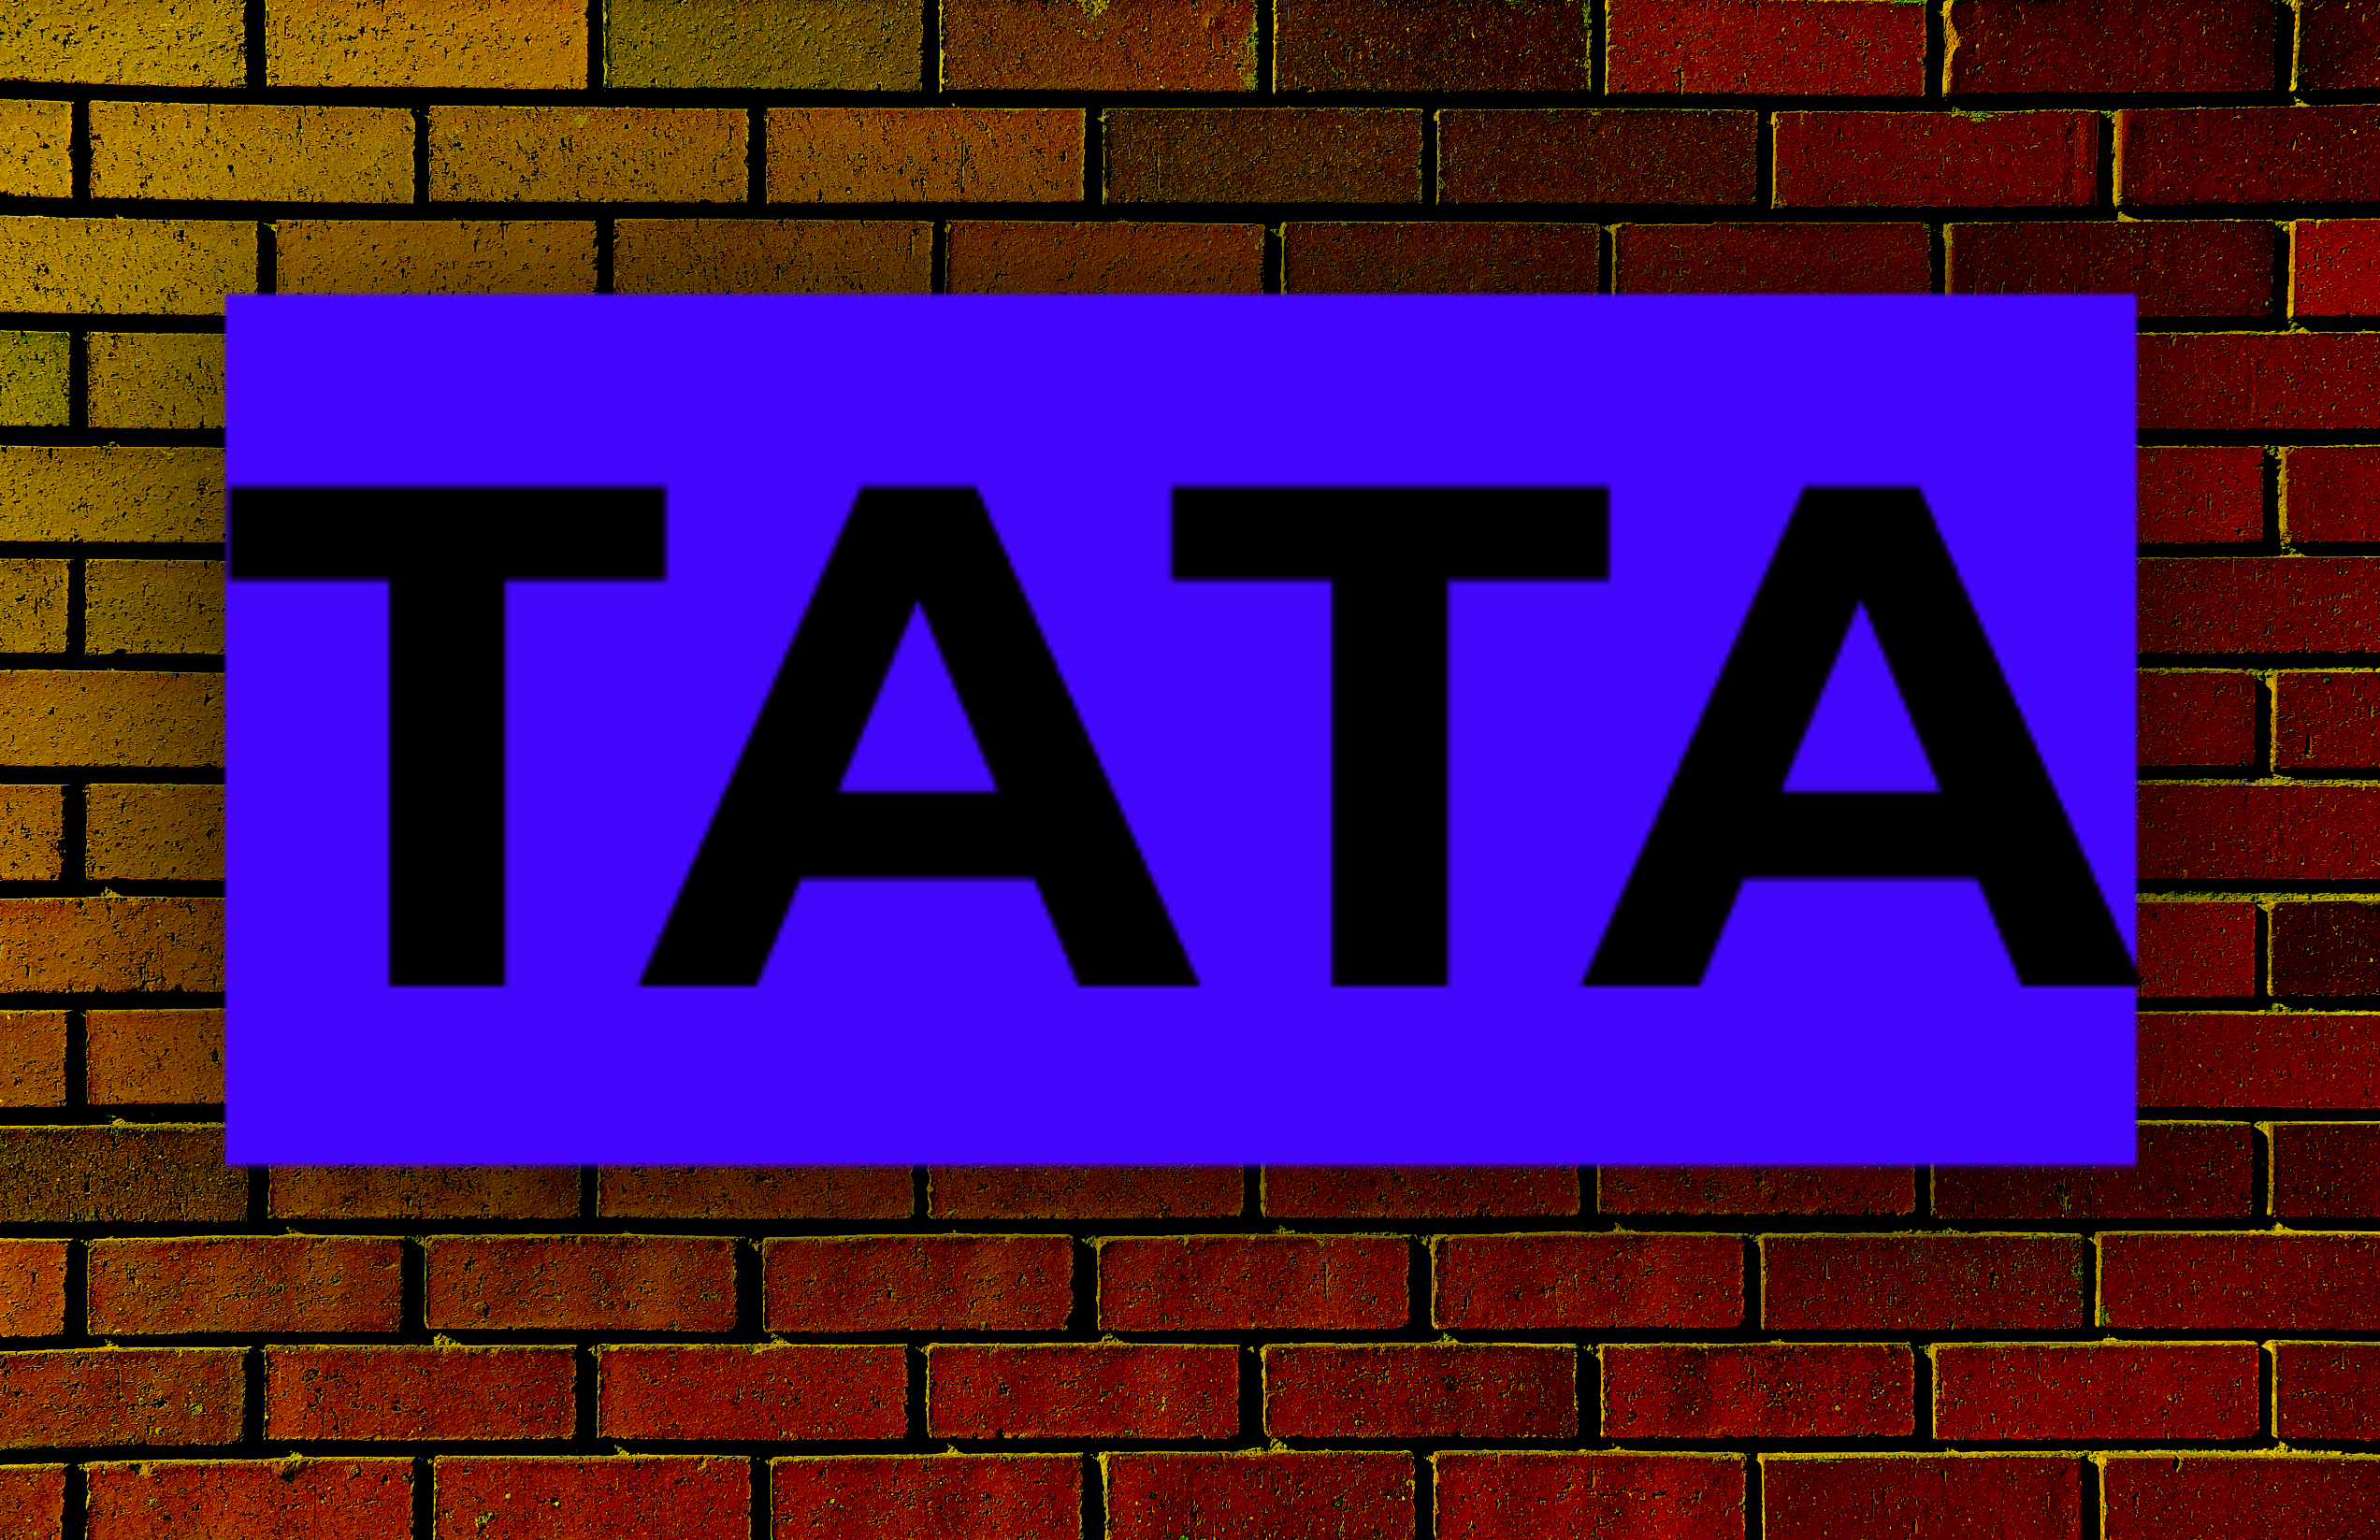 TATA टेक्नोलॉजीज का आईपीओ प्री-अप्लाई मोड के तहत खुलता है। इस मुद्दे के बारे में आपको जो कुछ भी जानने की जरूरत है